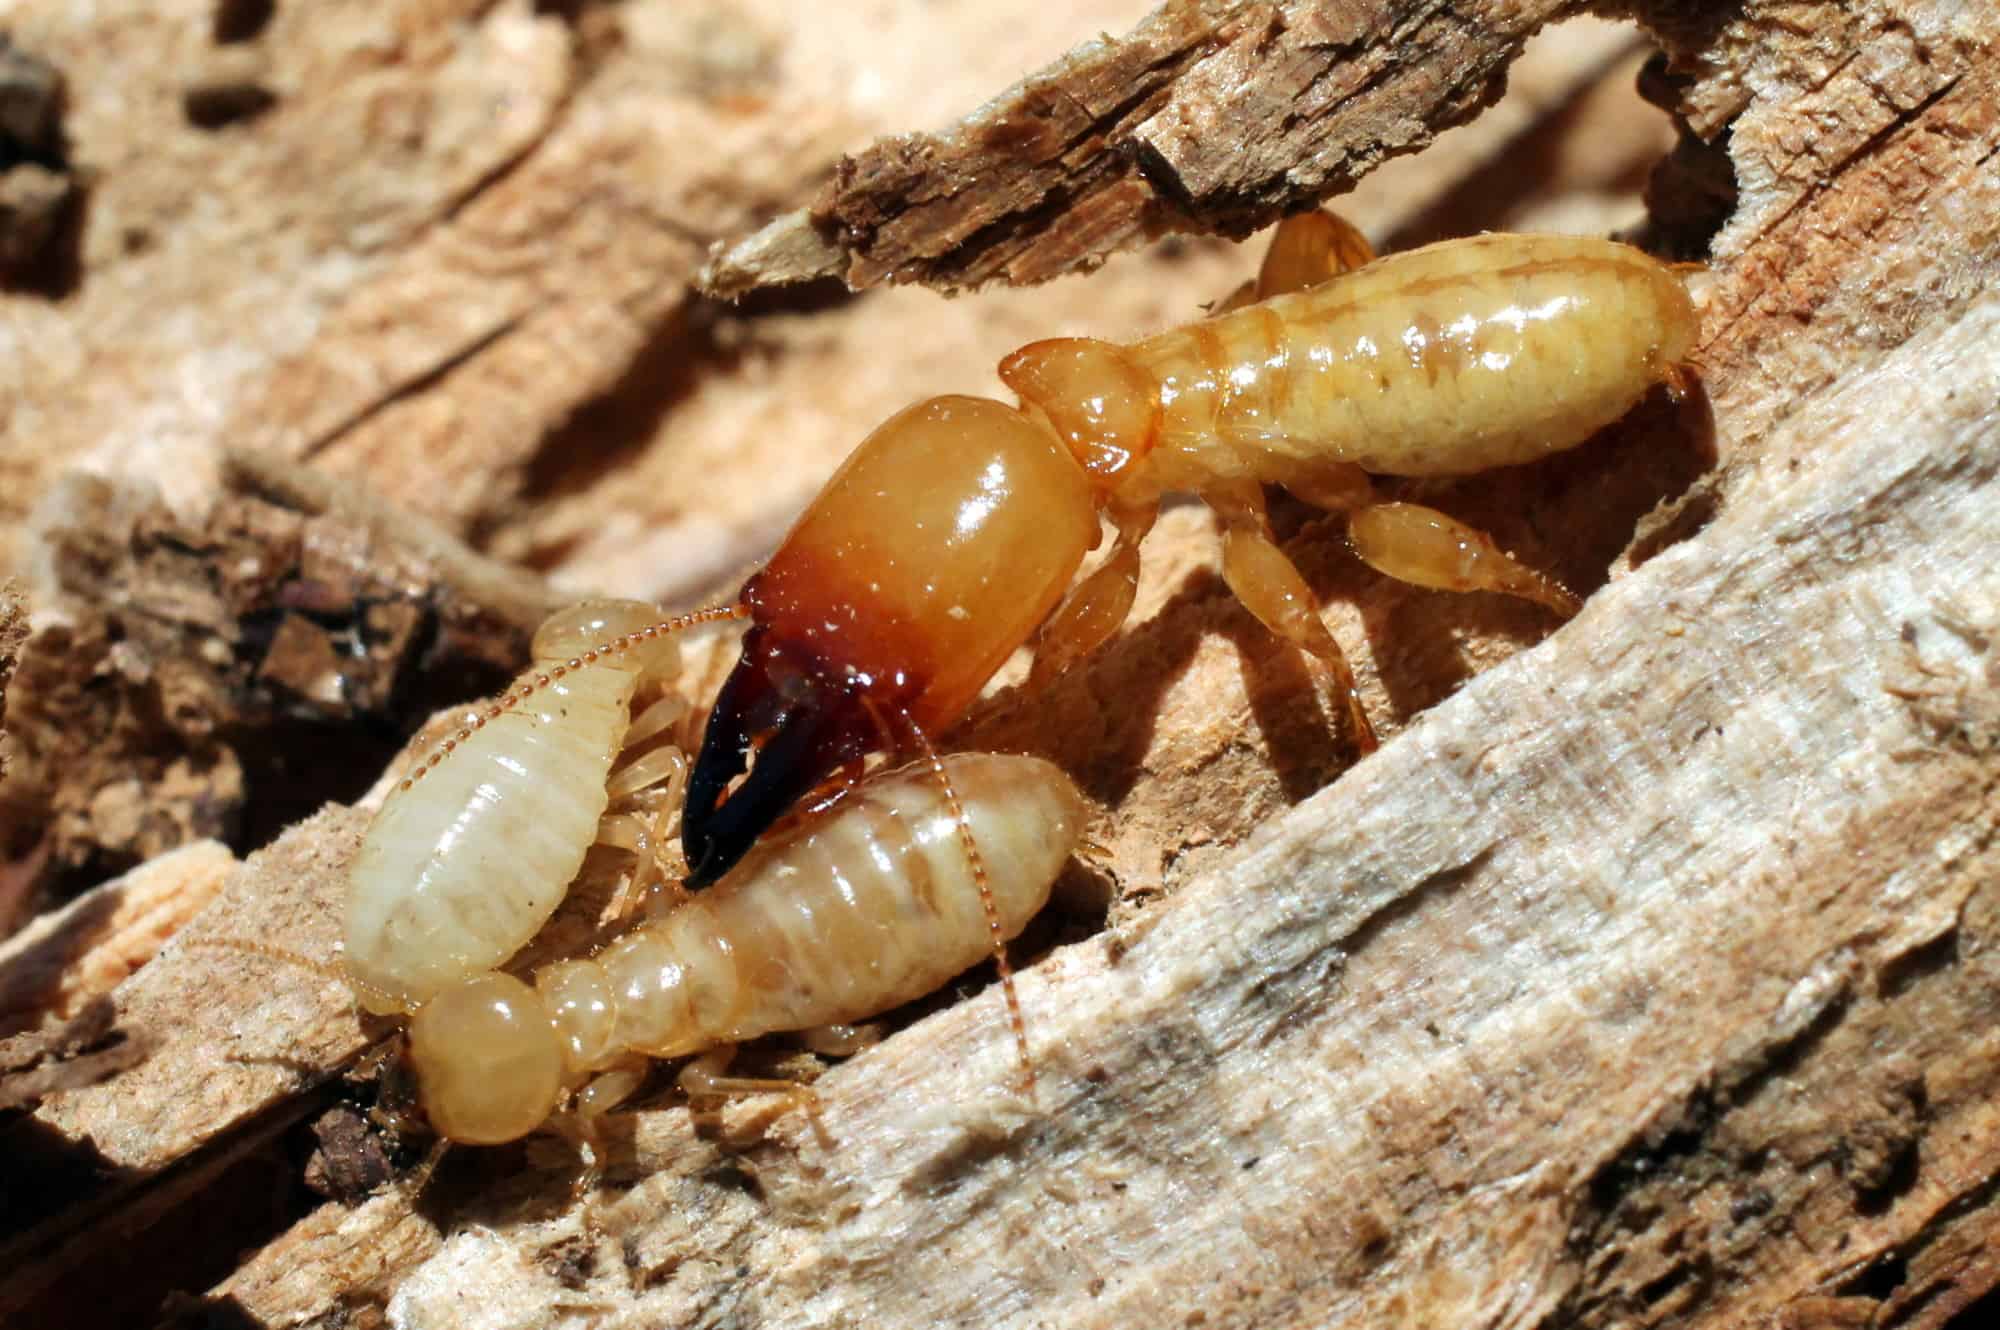 Termites 1